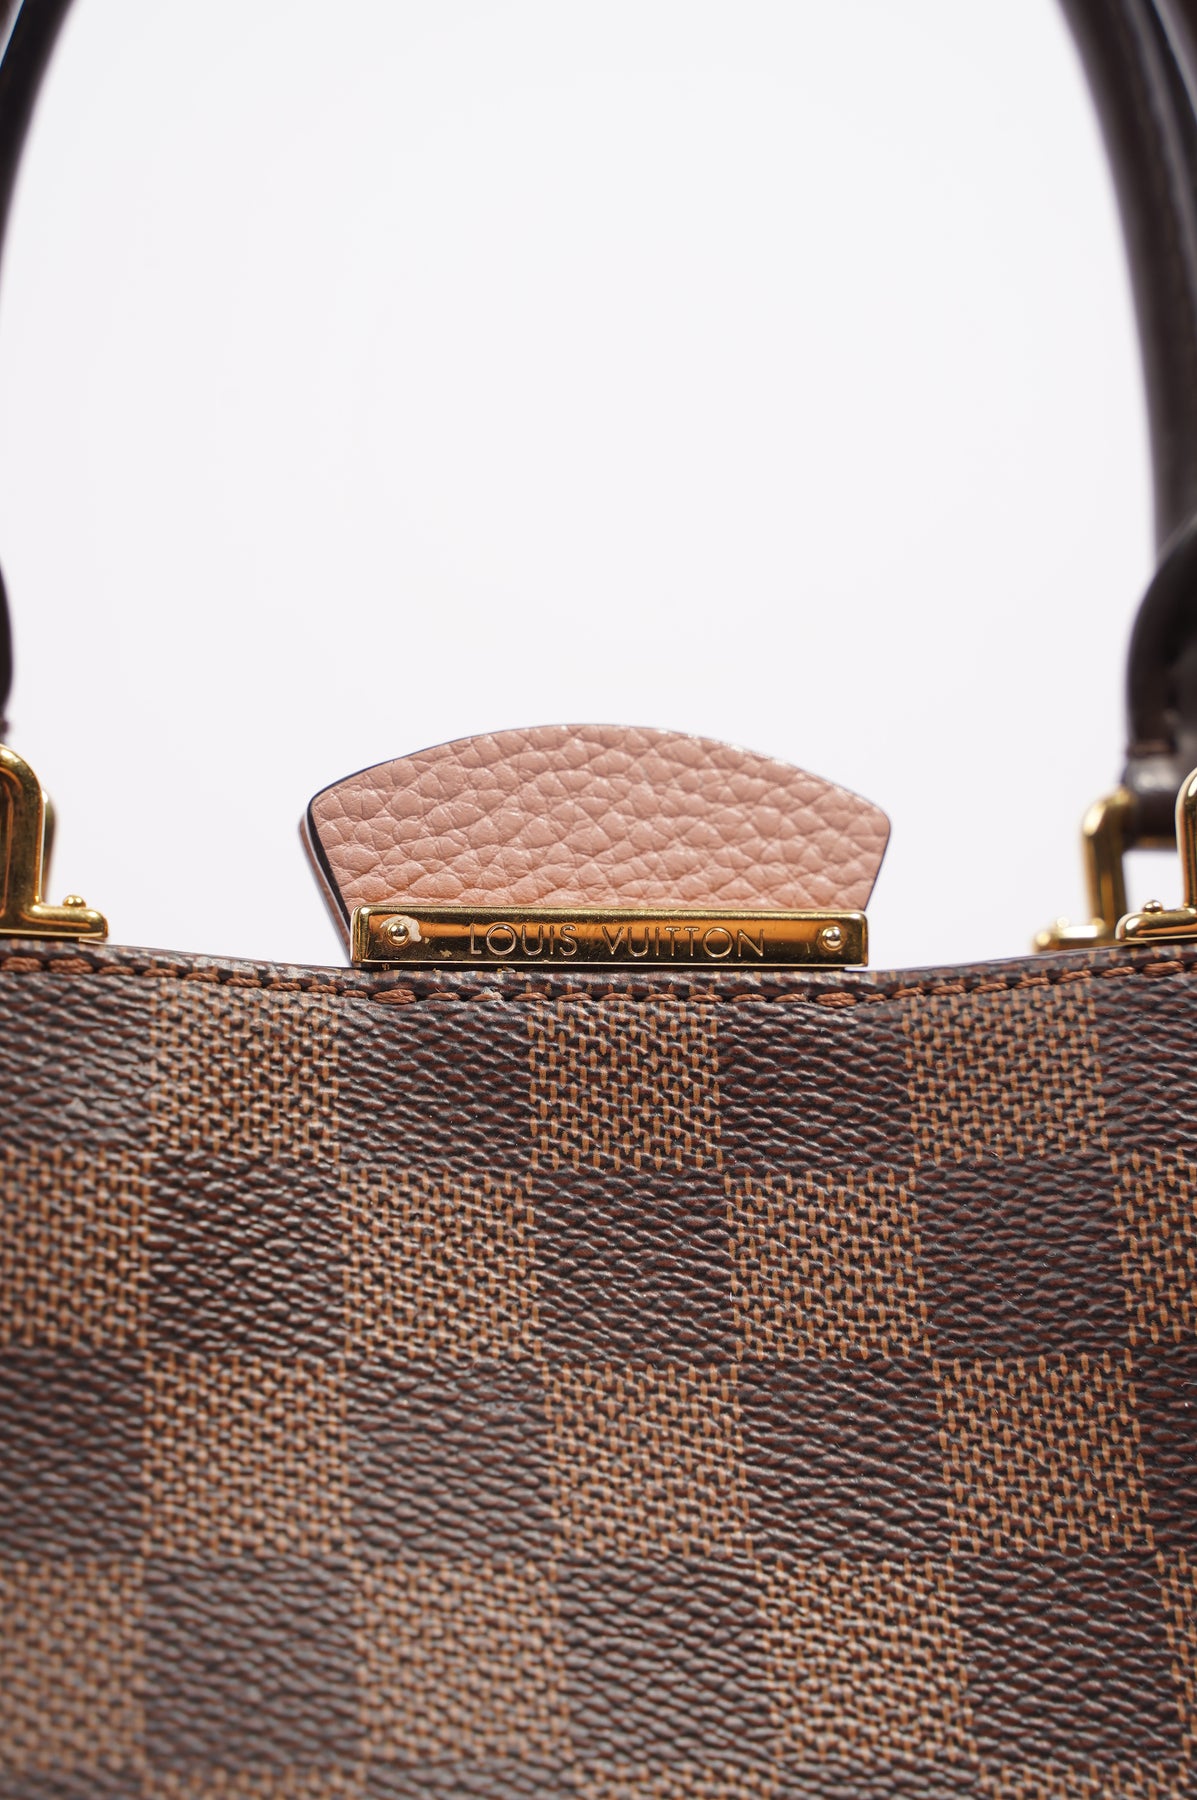 Capucines Handbag Louis Vuitton Beige In Wicker